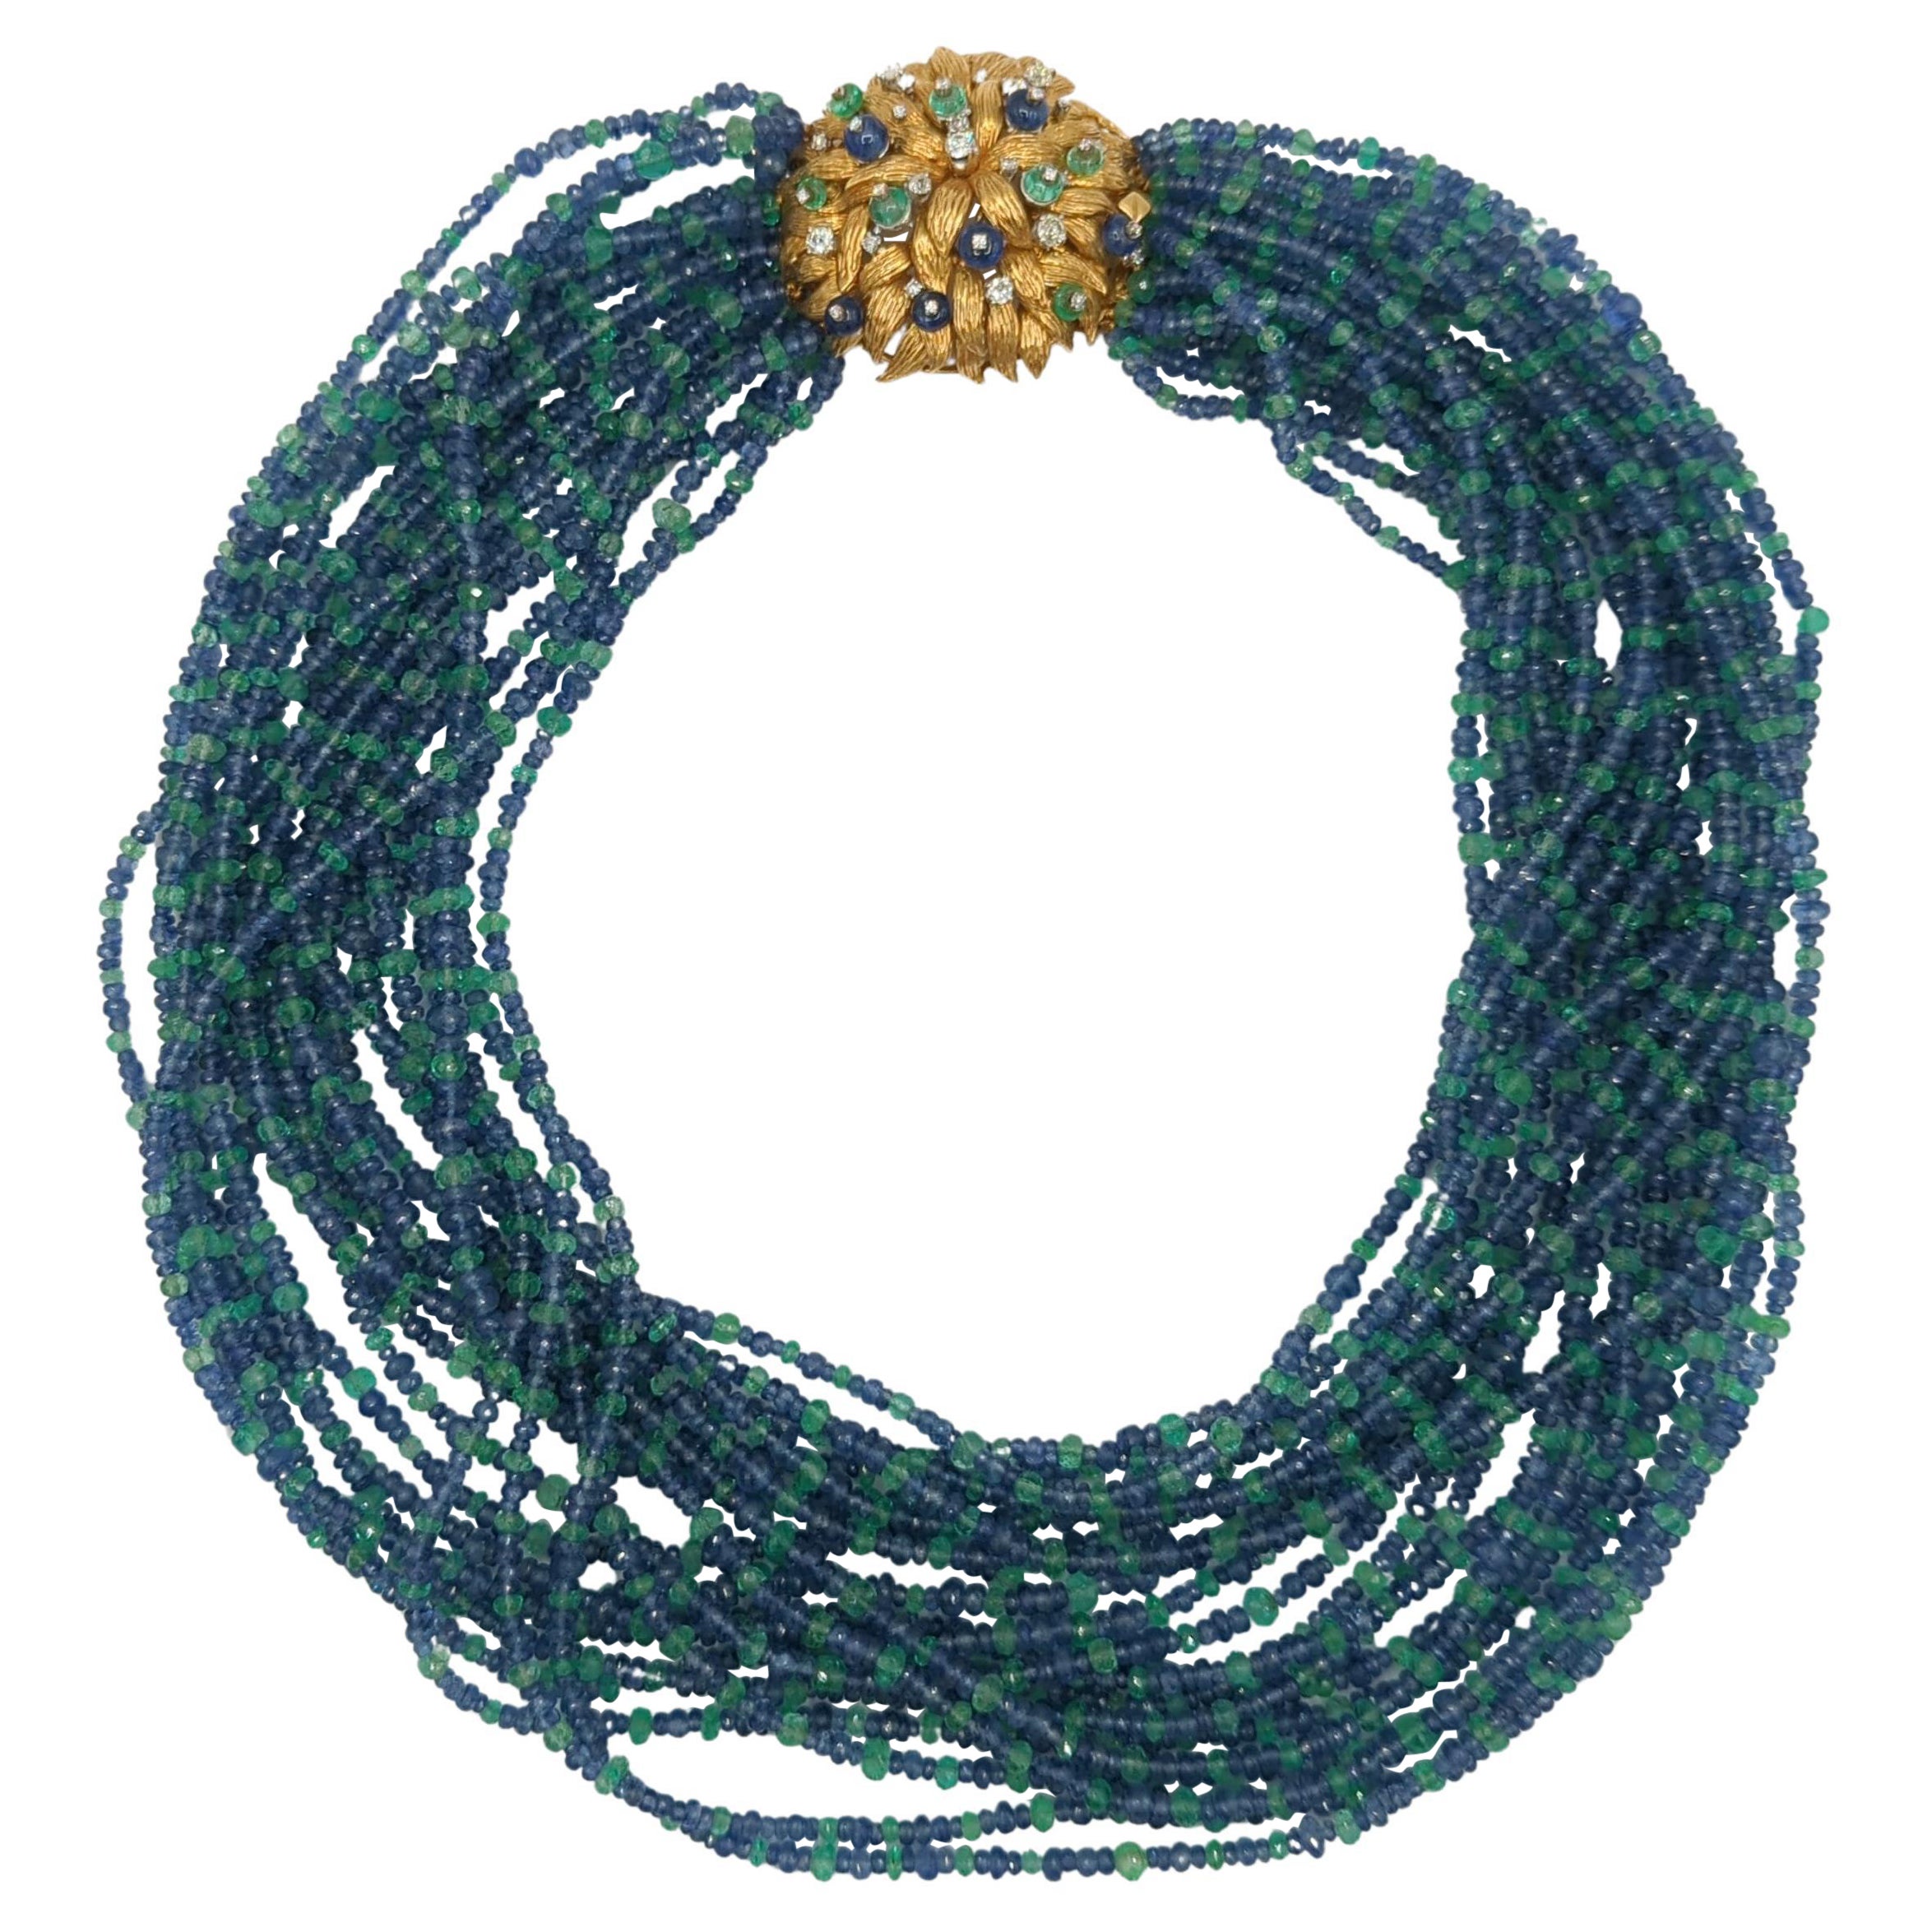 Kolumbianische Perlenkette aus 18 Karat Gelbgold mit Smaragd und Ceylonblauem Saphir und Perlen